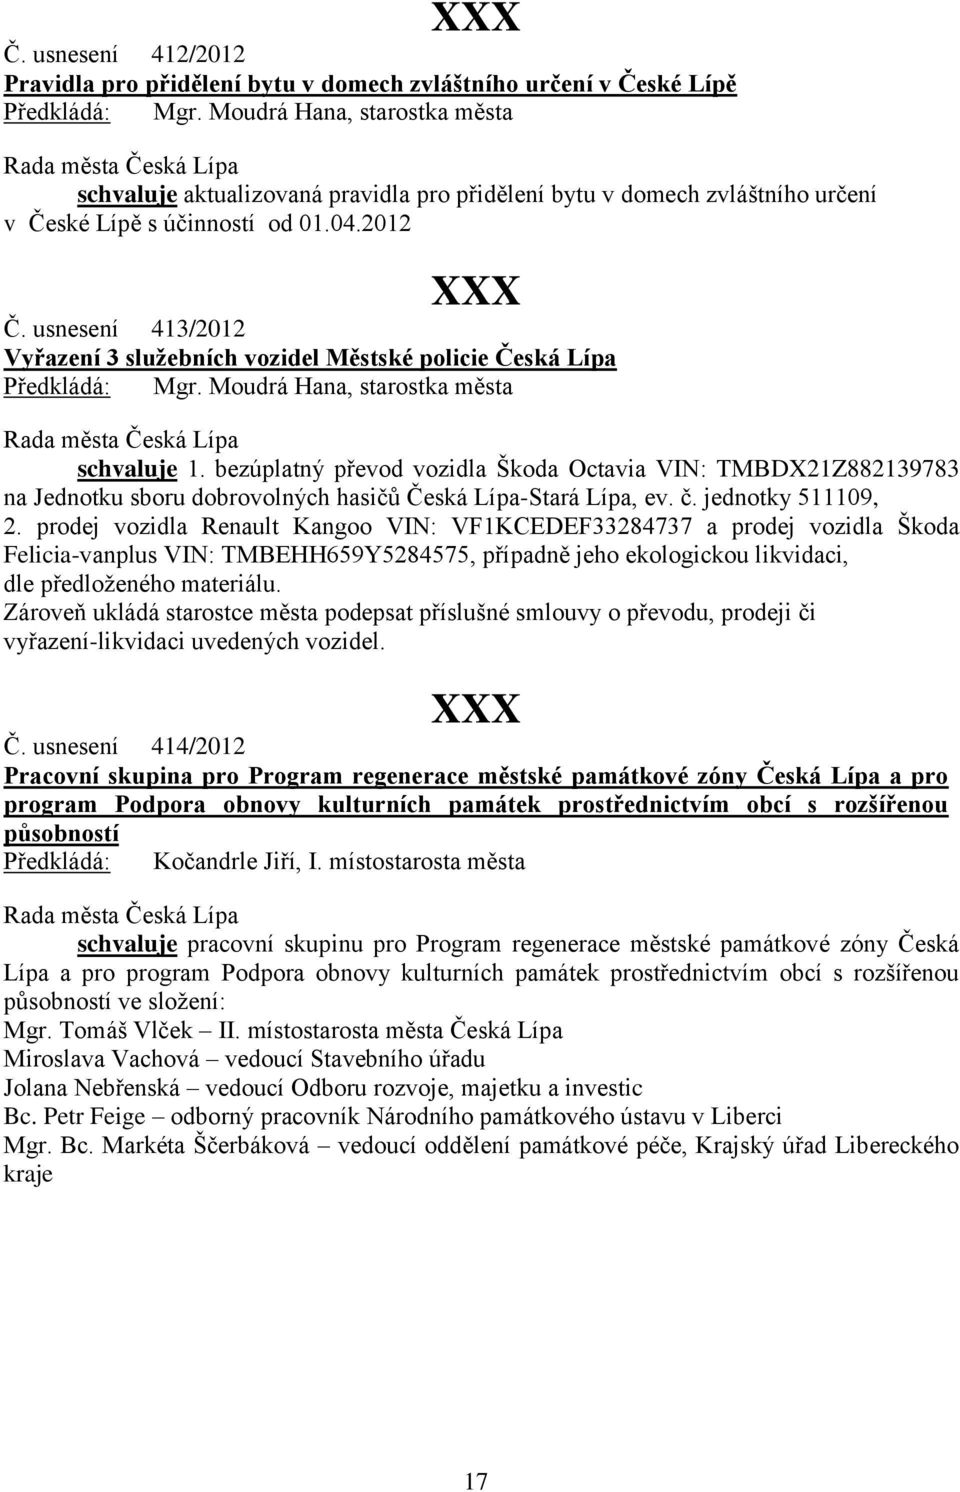 bezúplatný převod vozidla Škoda Octavia VIN: TMBDX21Z882139783 na Jednotku sboru dobrovolných hasičů Česká Lípa-Stará Lípa, ev. č. jednotky 511109, 2.